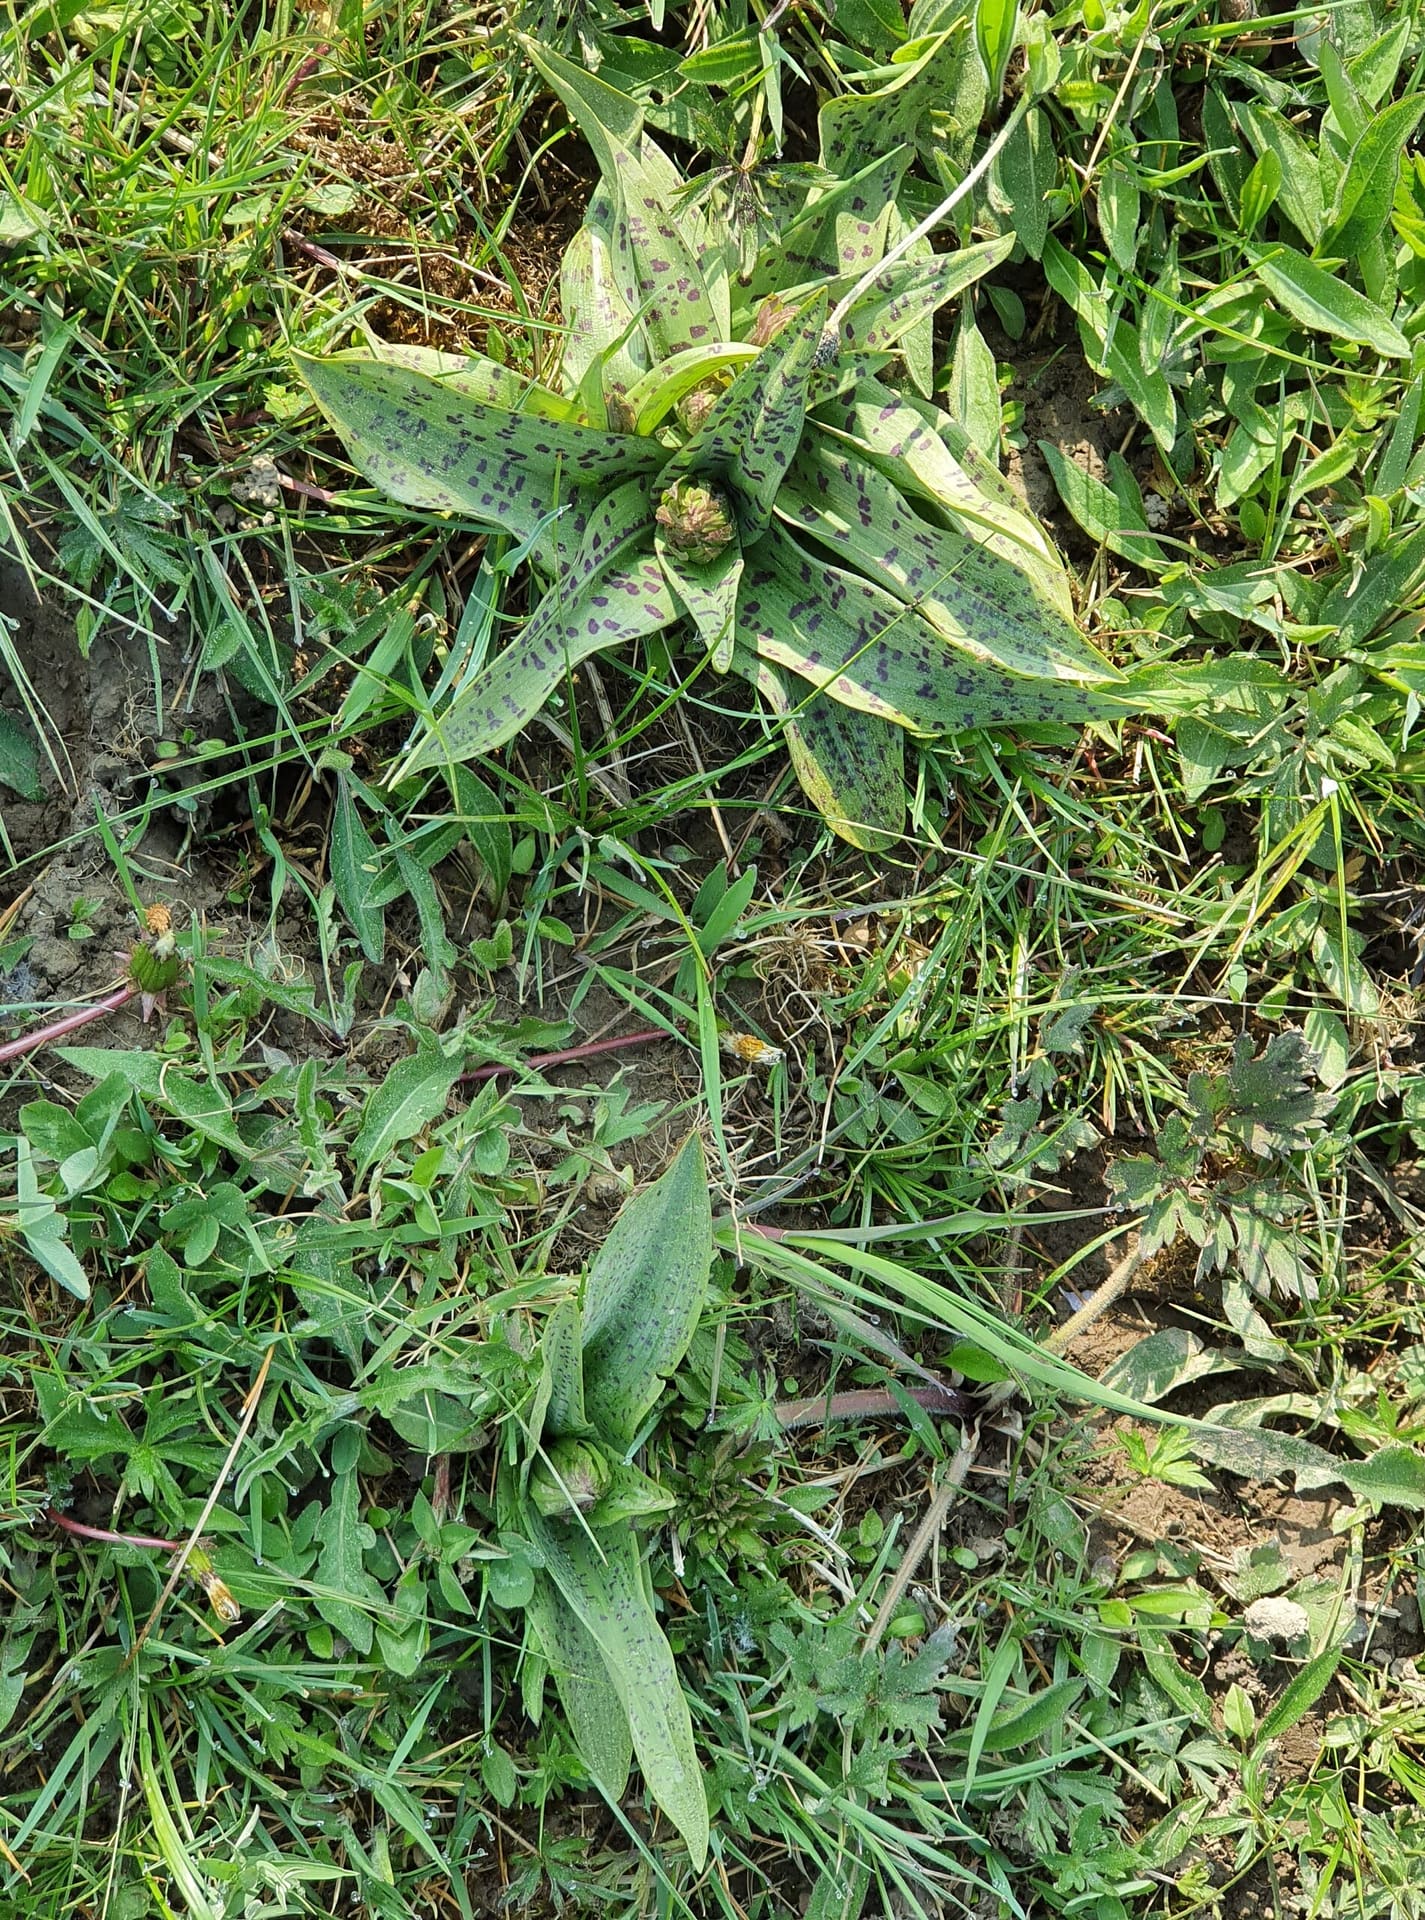 Dactylorhiza majalis